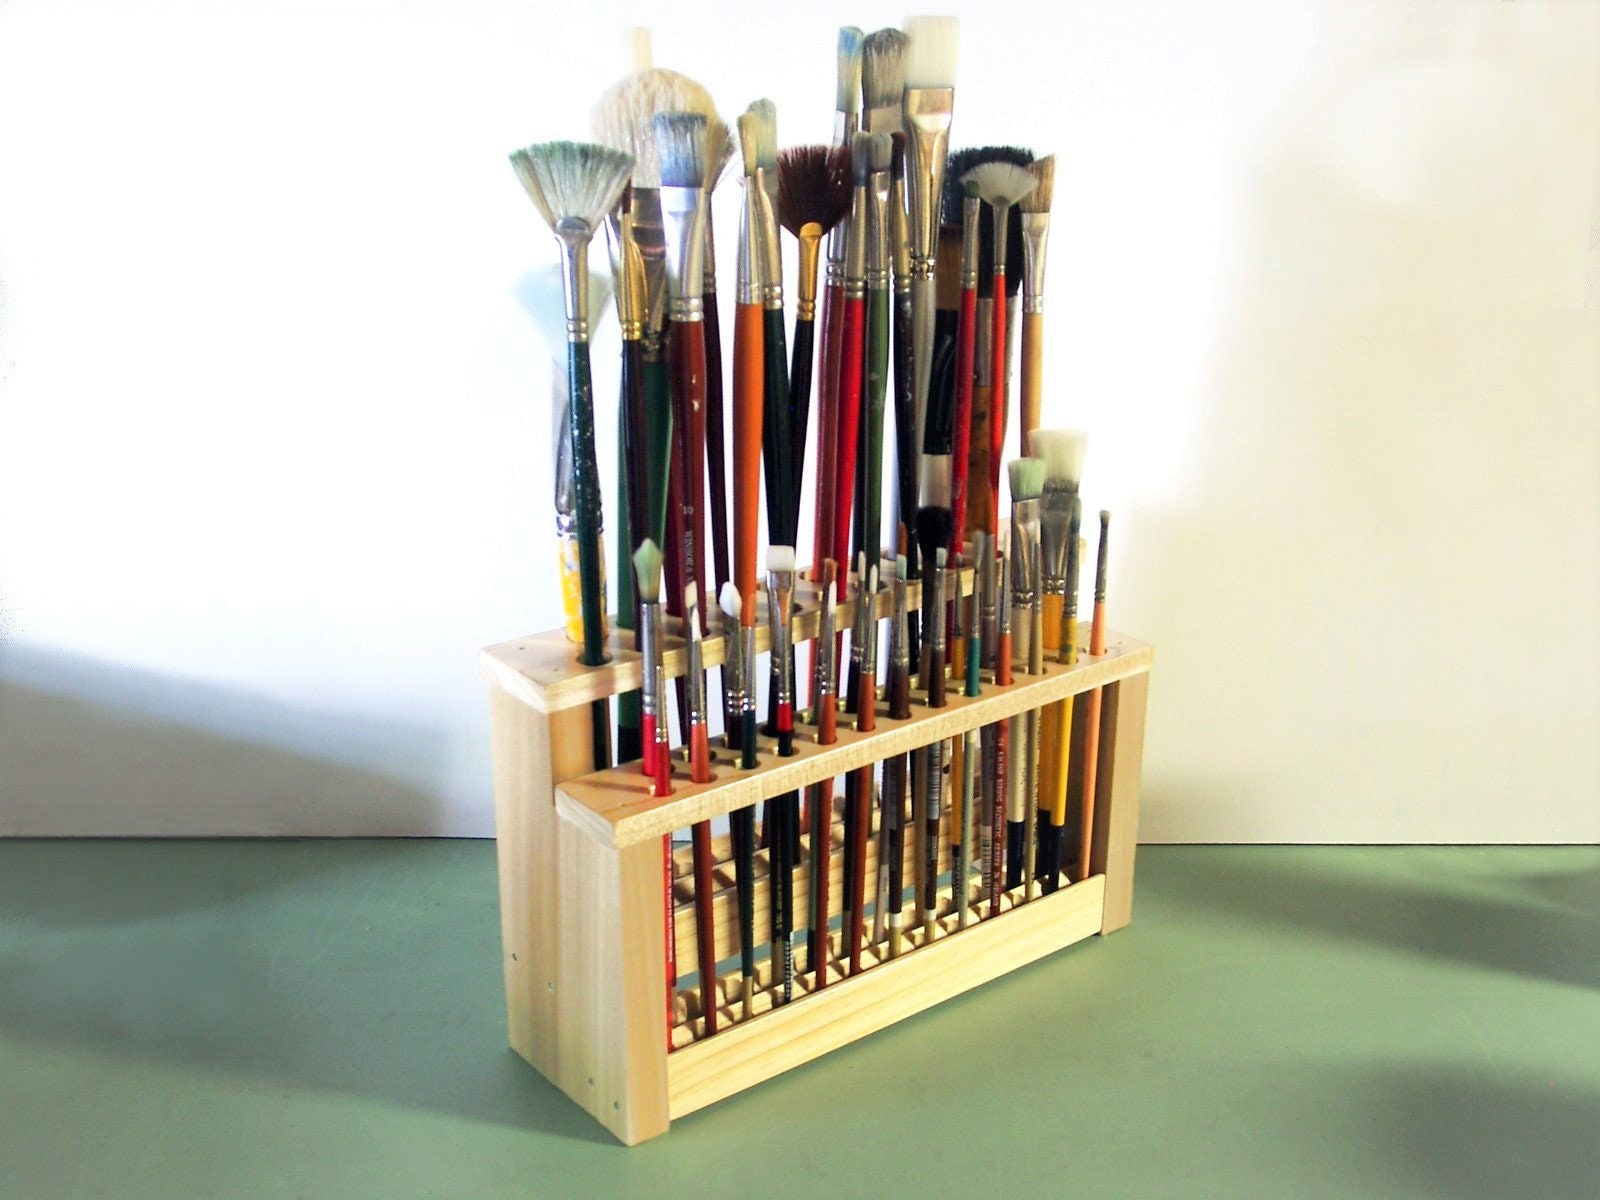 Artist Paint Brush Holder, Paint Brush Organizer, 67 Holes Wooden Paint Brush Holder Stand, Desk Watercolor Brush Organizer, Desk Paintbrush Holding